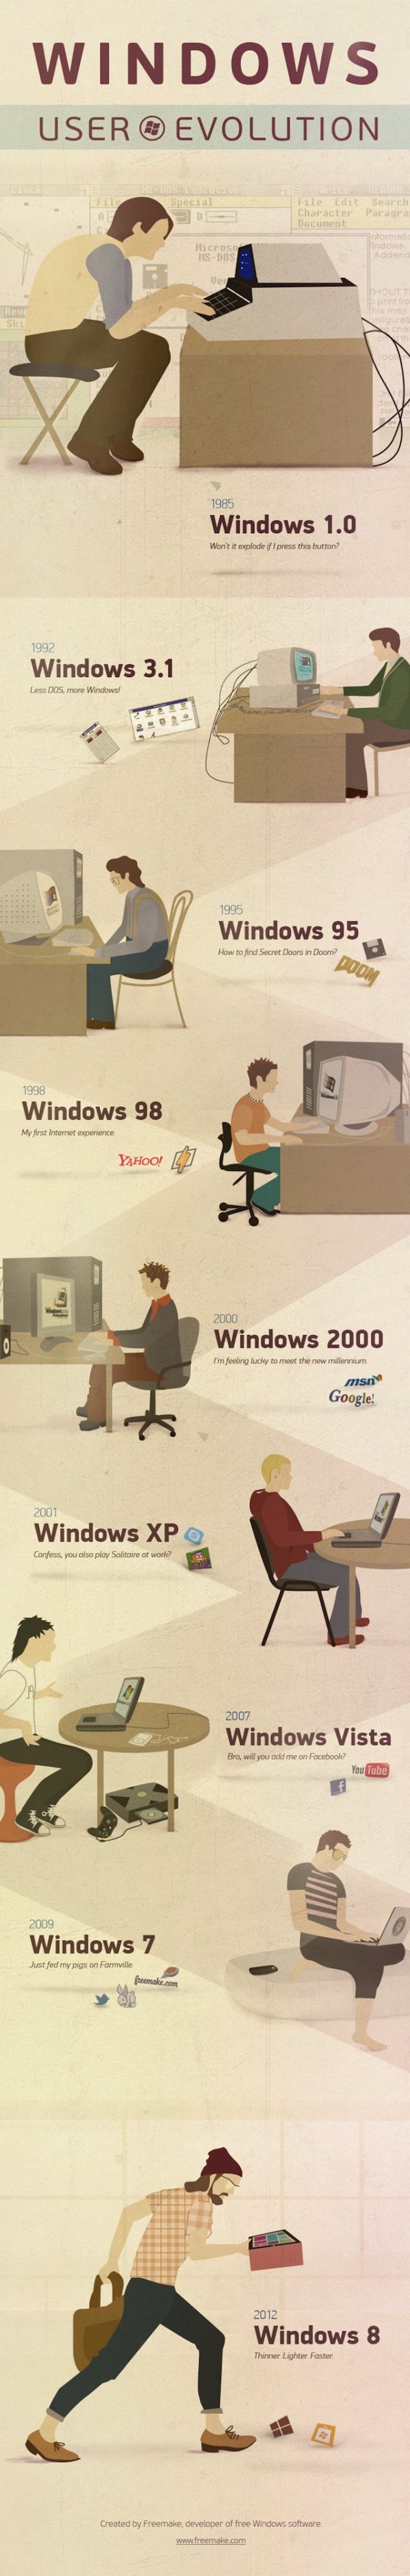 Infografia La evolución del usuario de Windows